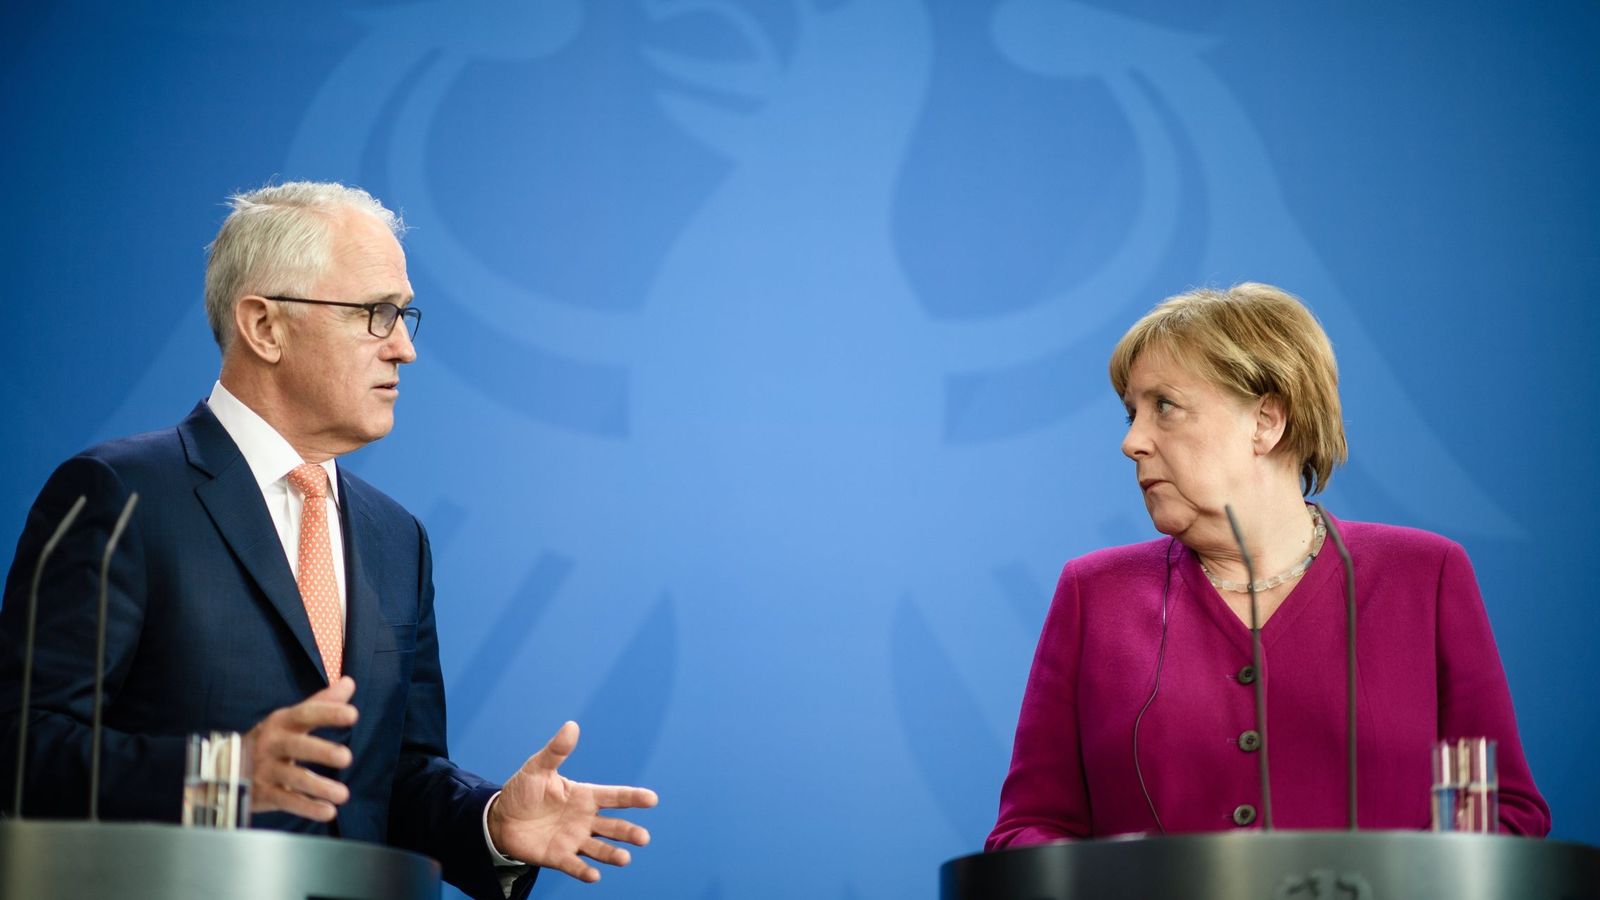 Foto: El primer ministro australiano Malcolm Turnbull habla con Angela Merkel durante su visita oficial a Berlín, el 23 de abril de 2018. (Reuters)